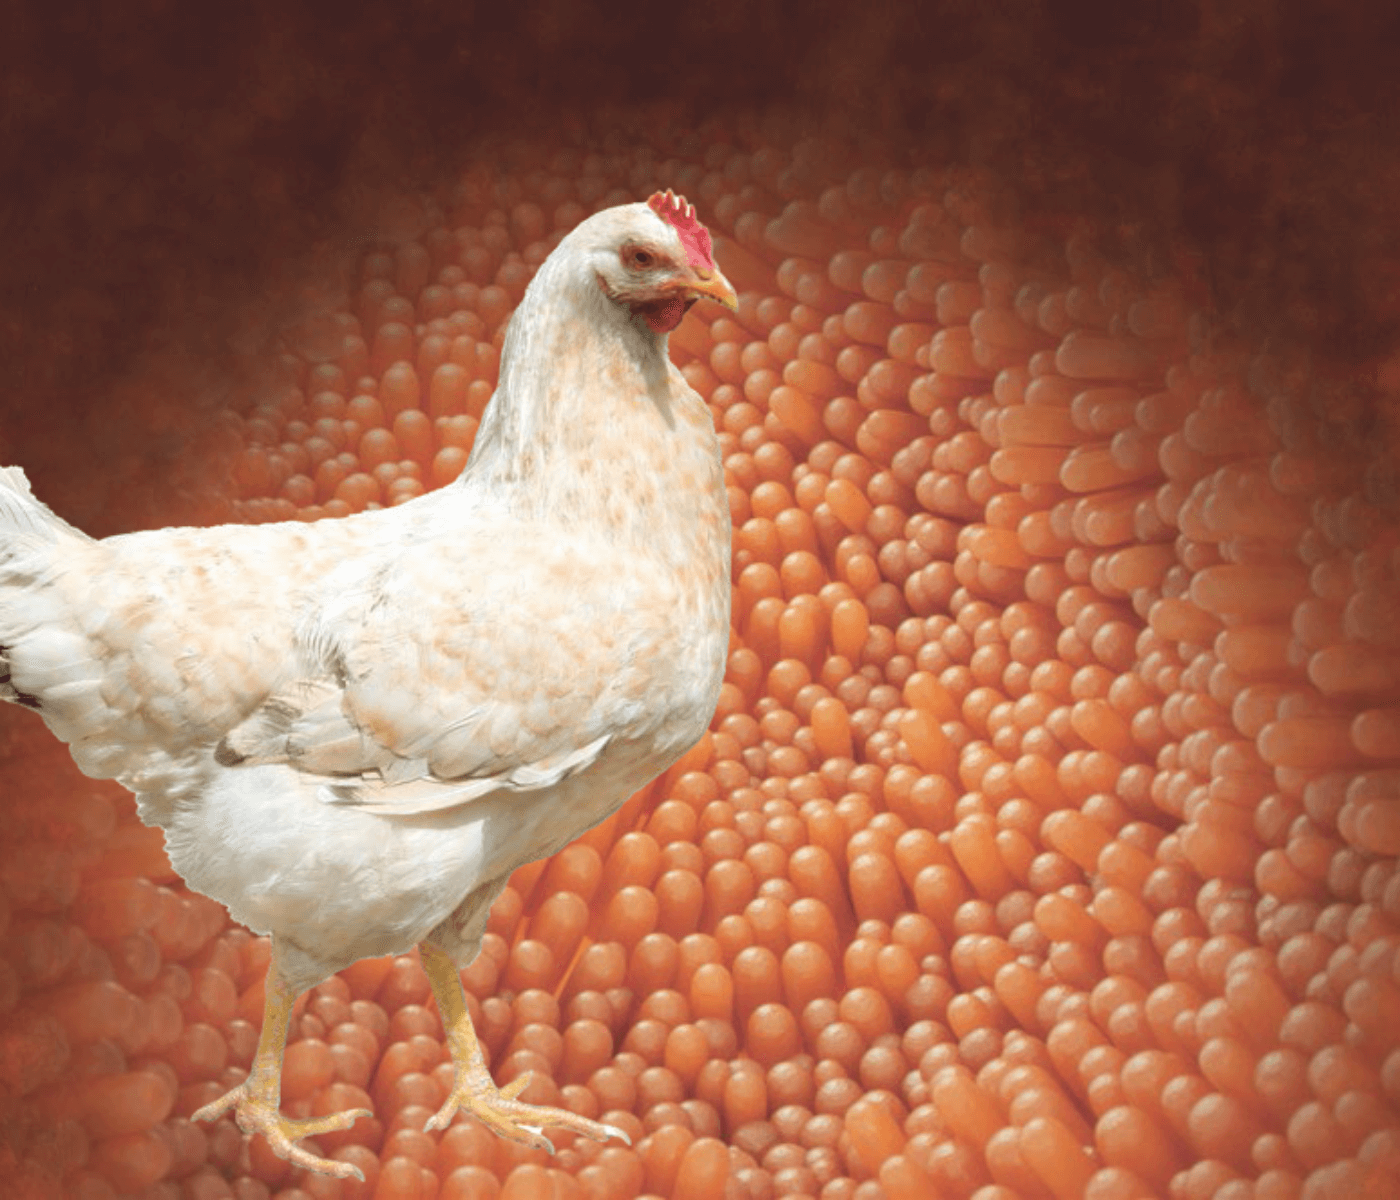 Impactos do estresse térmico sobre a saúde intestinal de frangos de corte